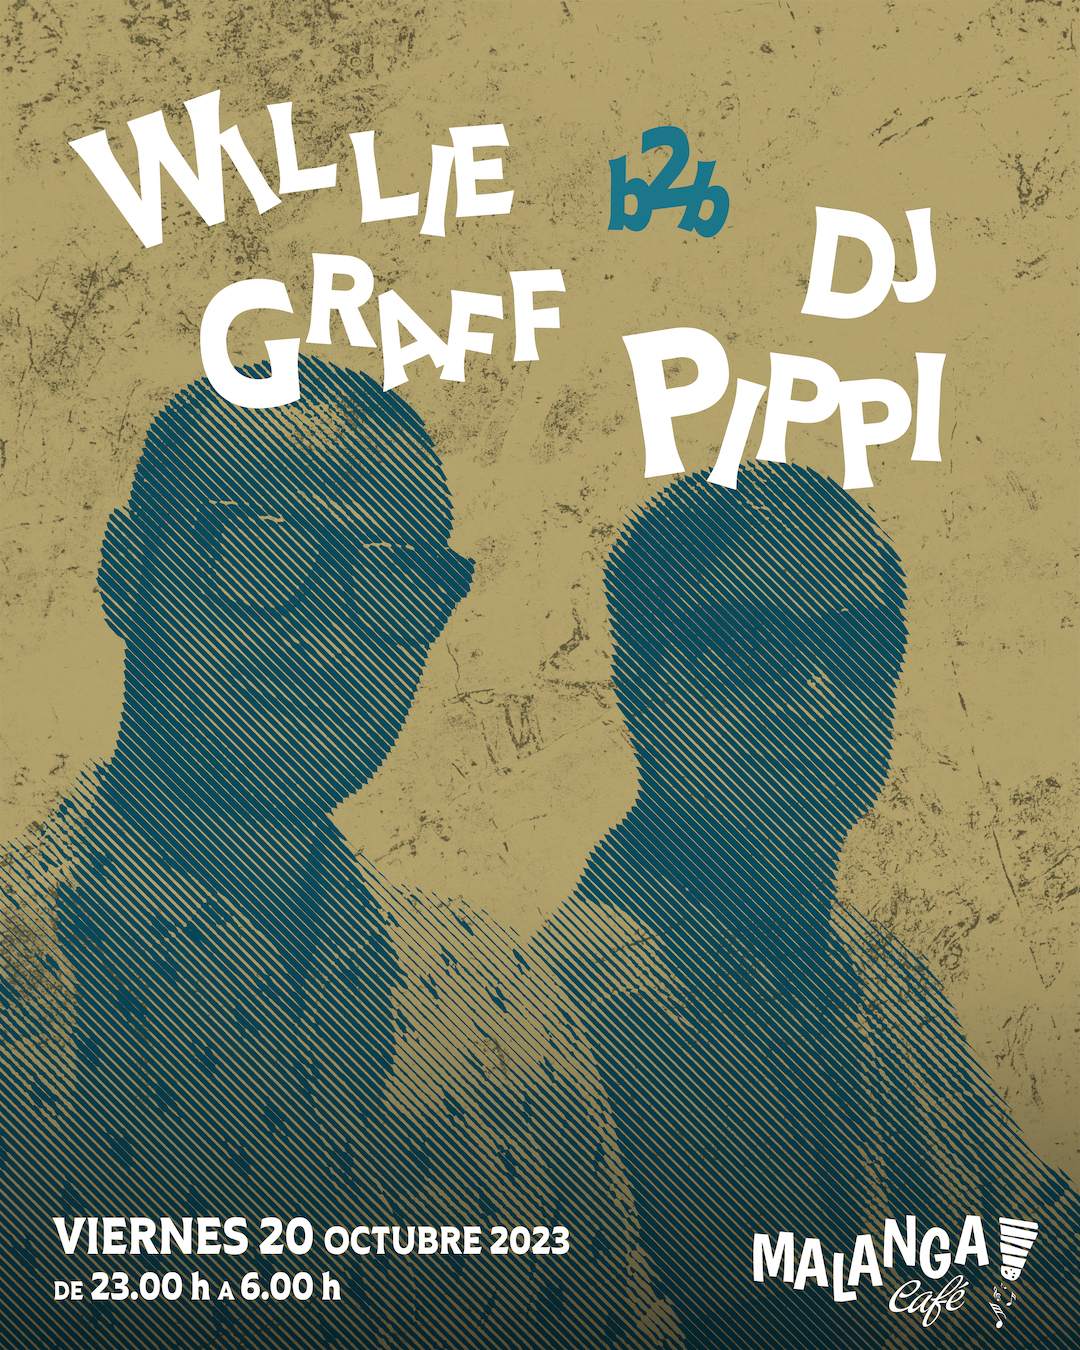 DJ Pippi & Willie Graff - Página frontal